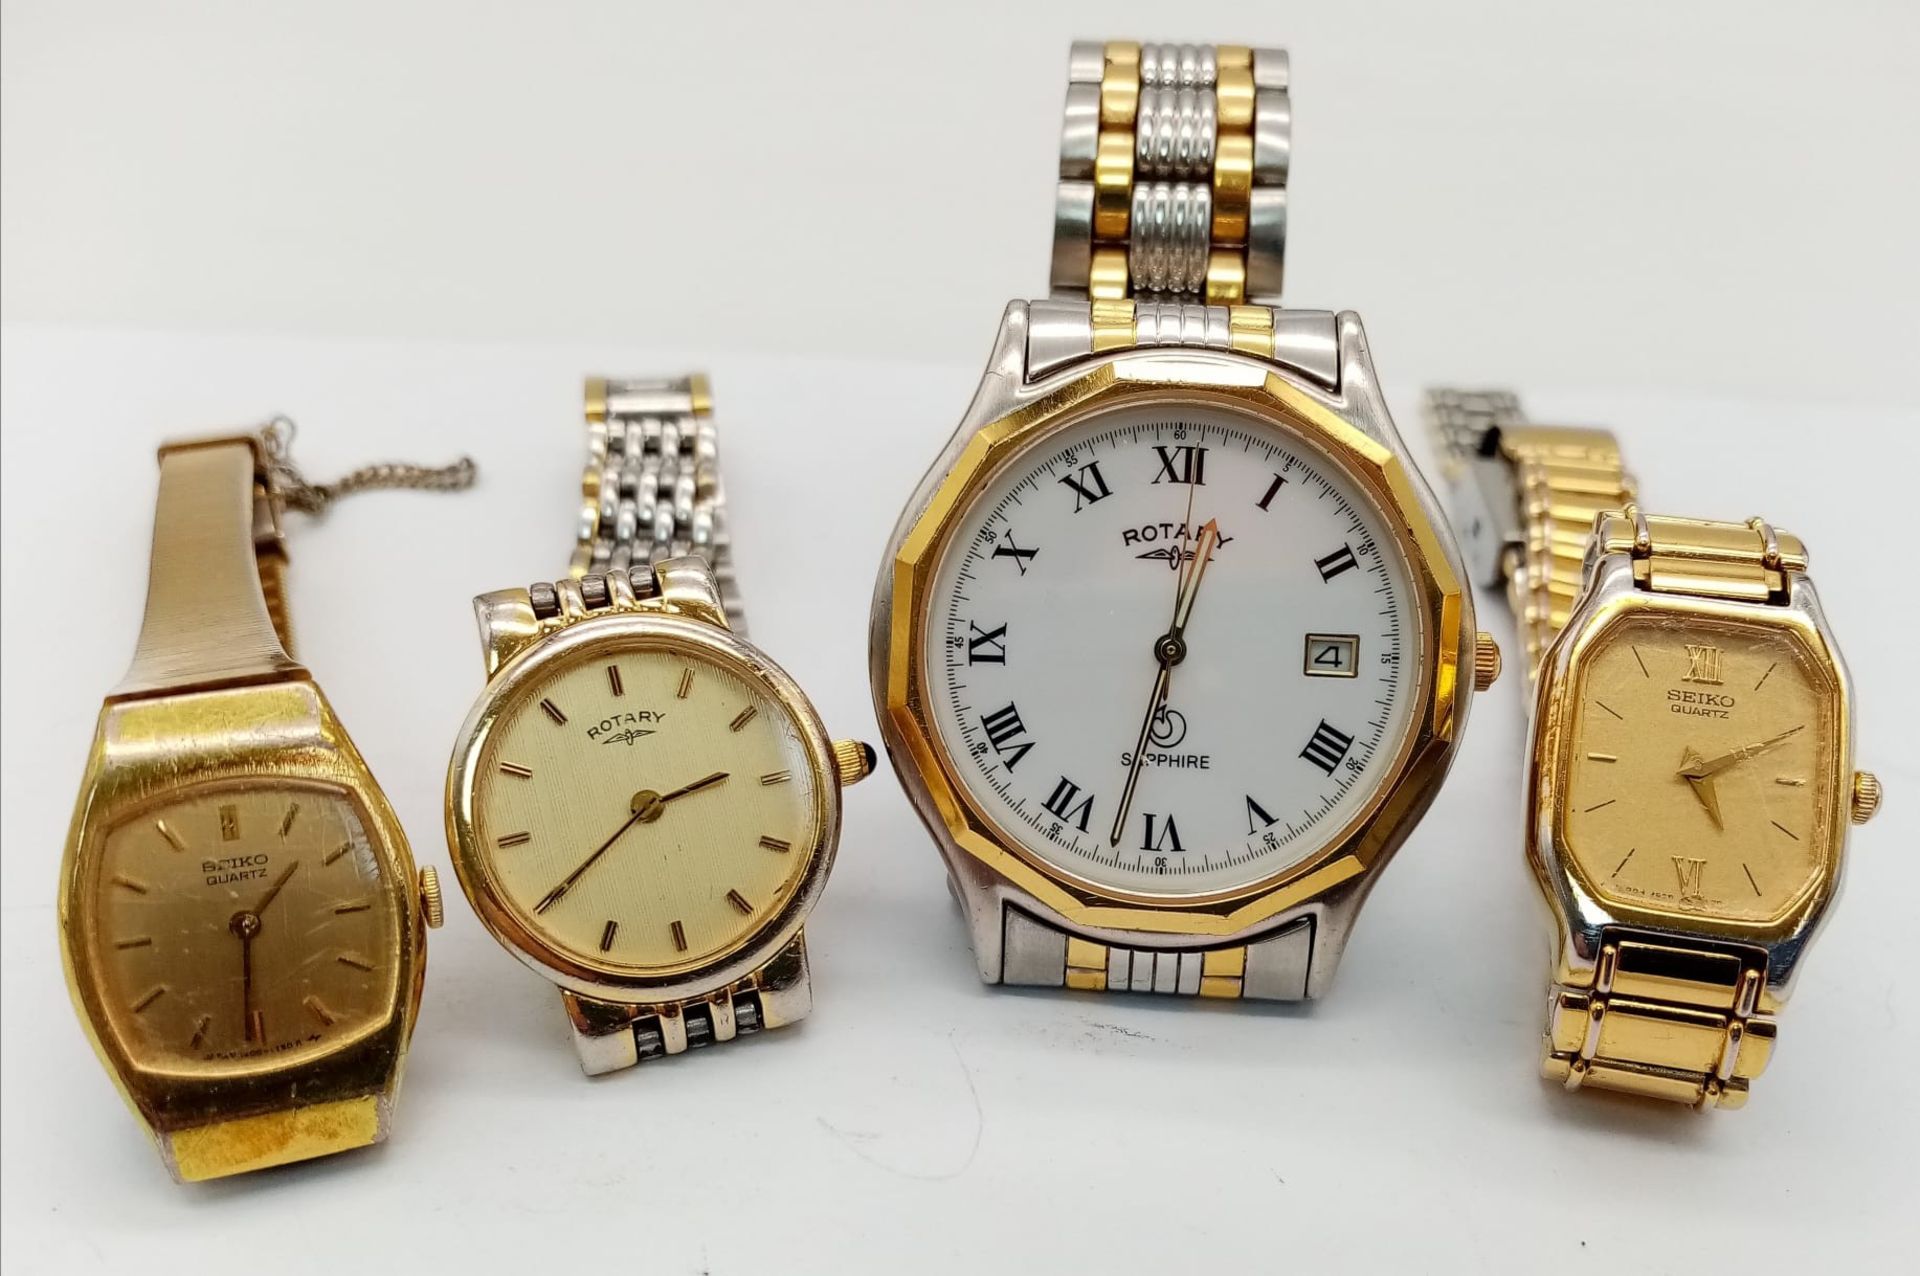 Four Vintage Watches - 2 x Seiko, 2 x Rotary. As found.